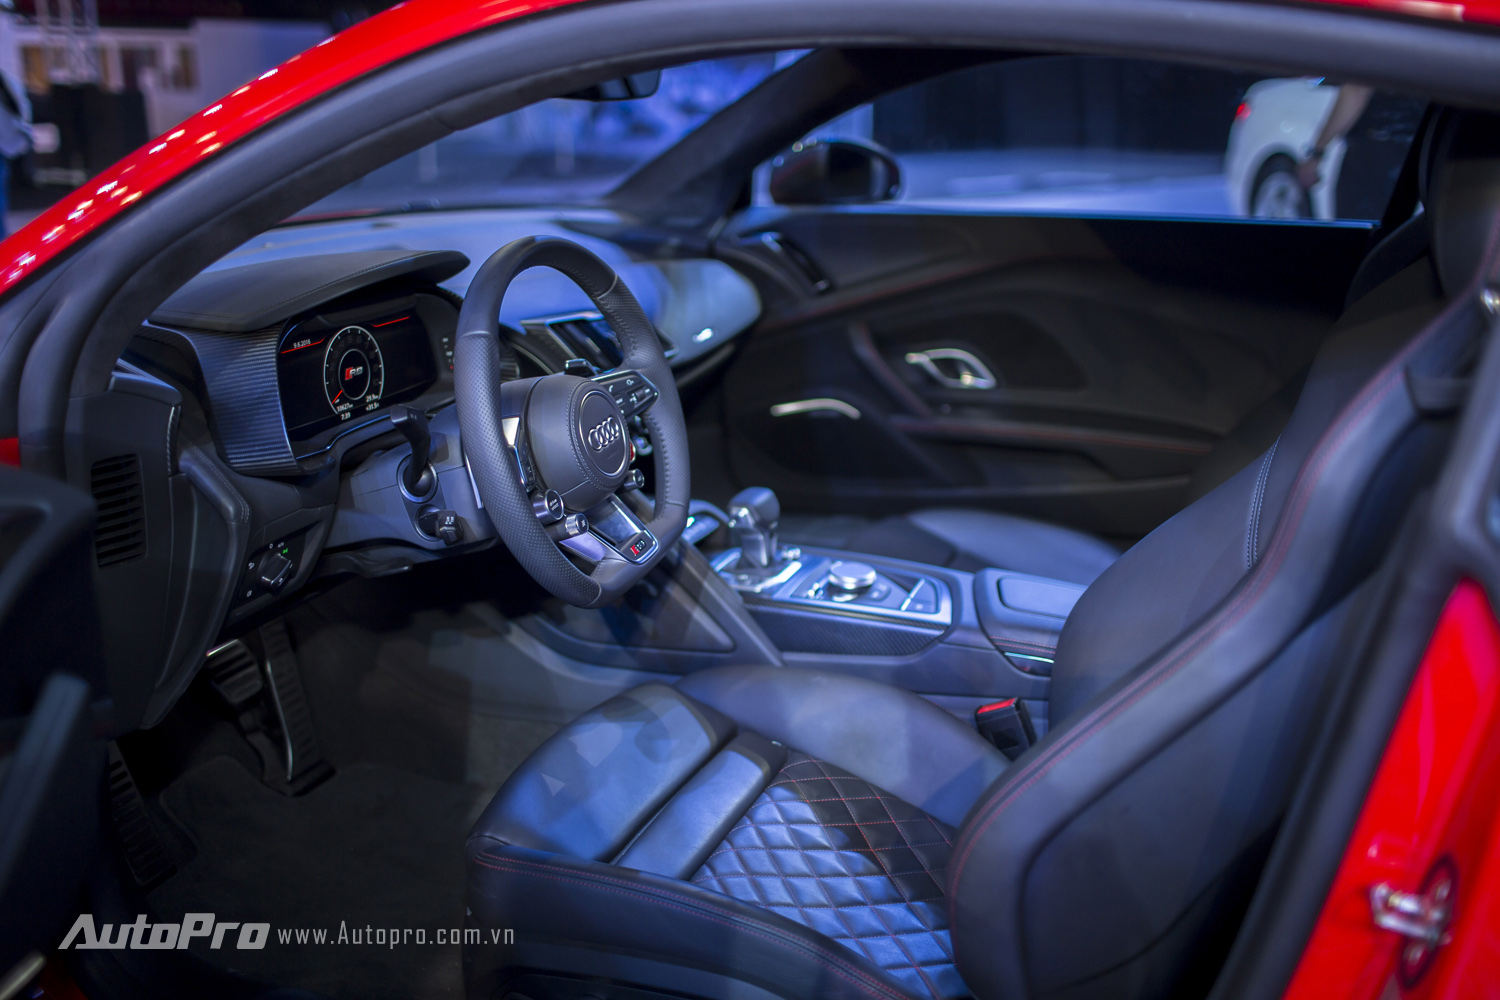 
Nội thất bên trong Audi R8 V10 Plus được bọc da đen với ghế thể thao cùng những đường chỉ khâu đỏ nổi bật.
